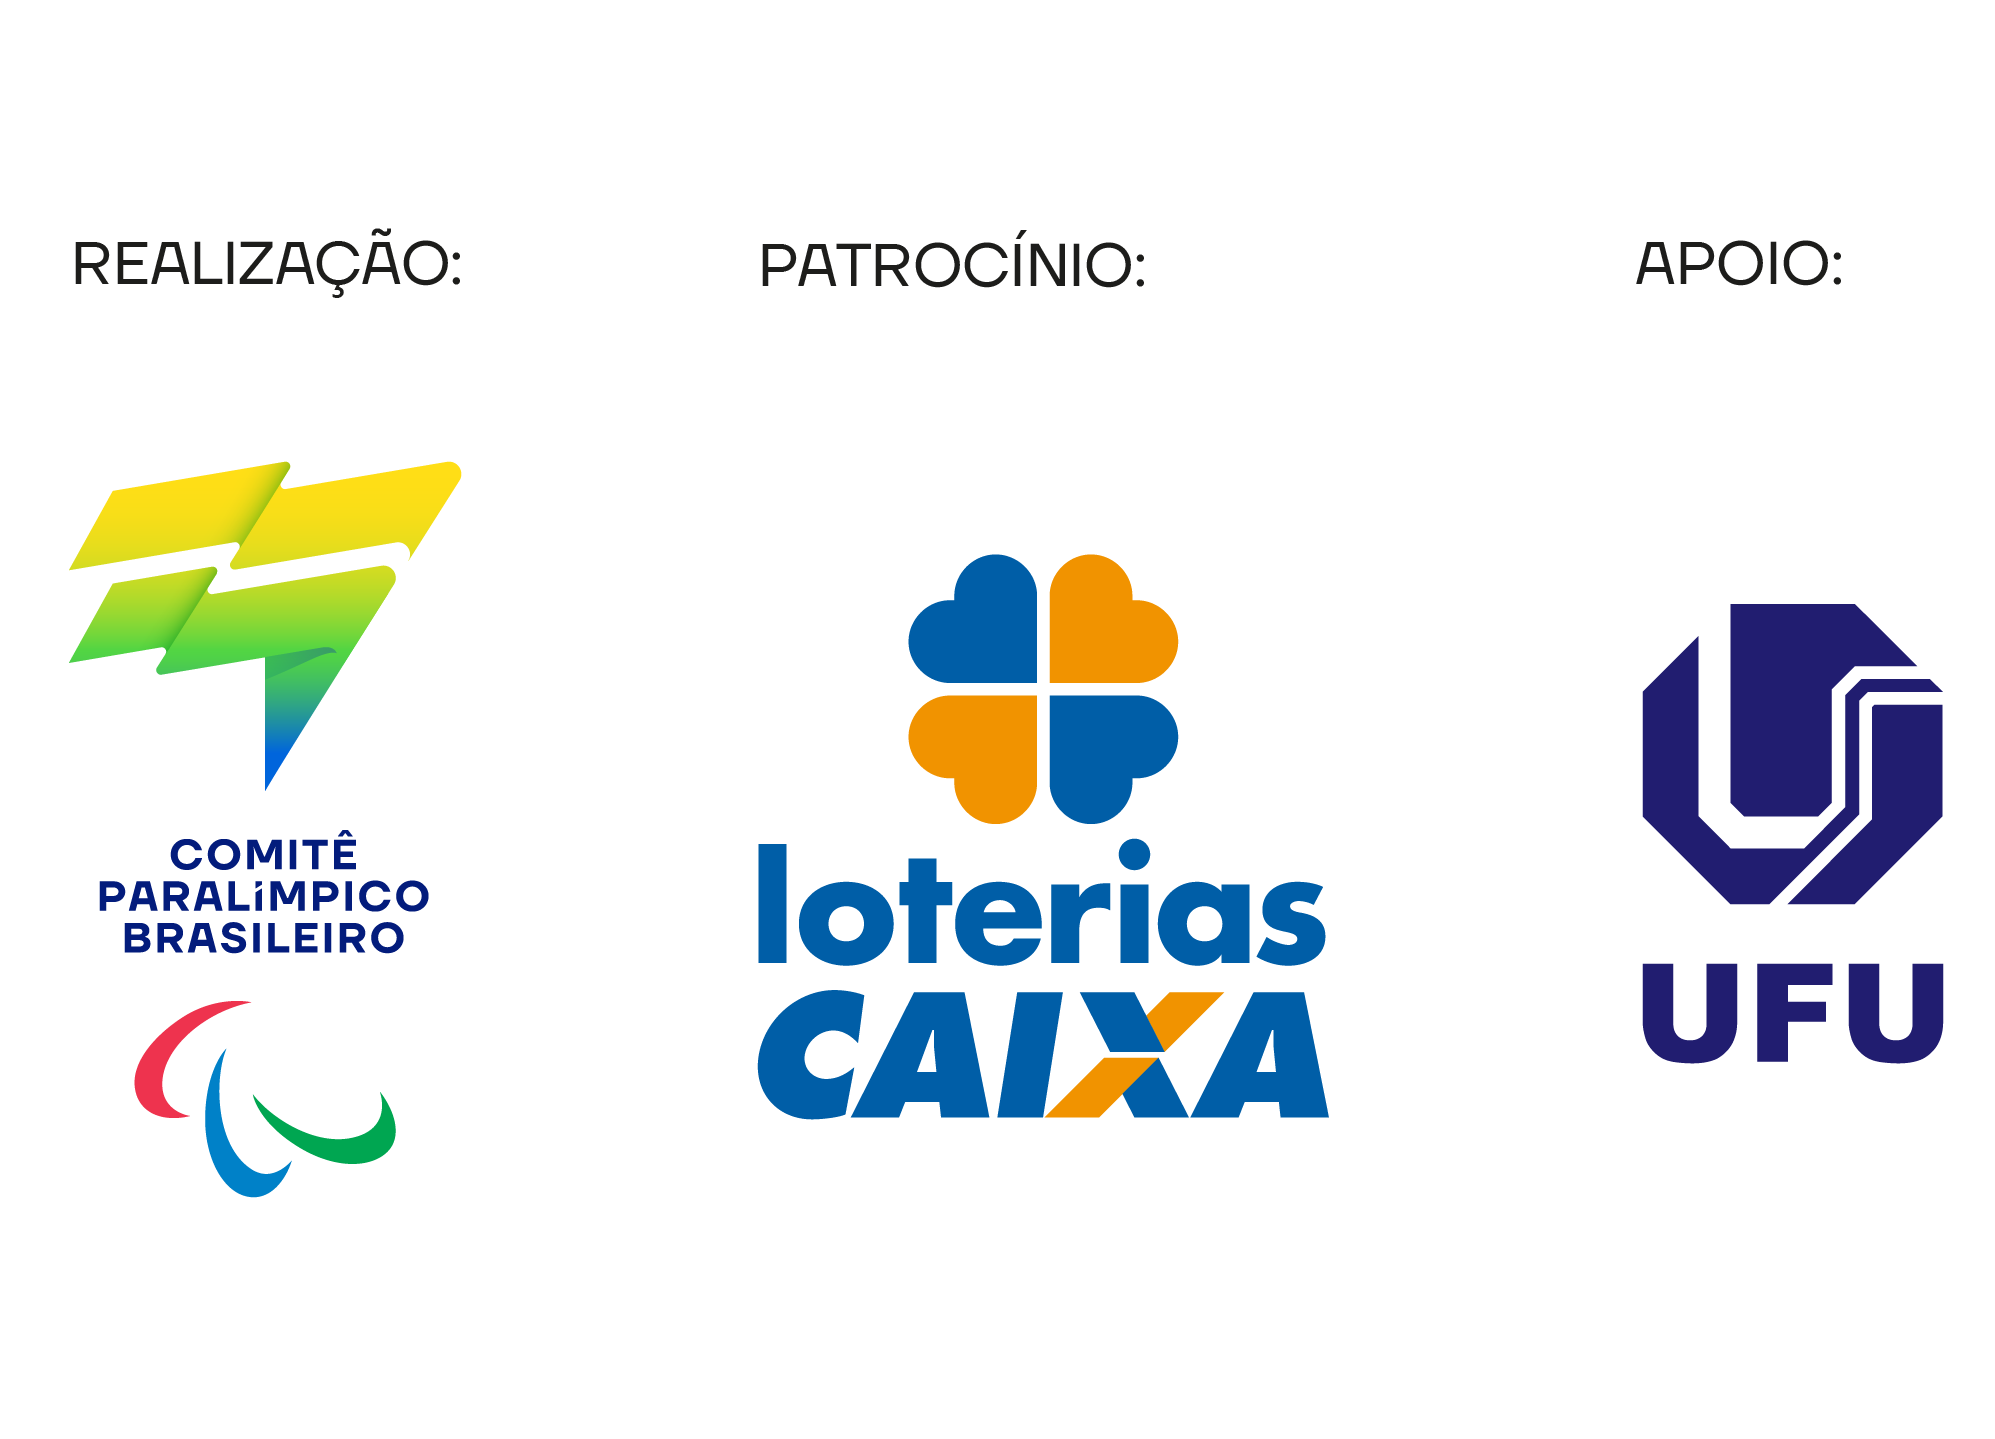 Imagem de Apoio: Comitê Paralímpico Brasileiro, Patrocínio: Loterias Caixa, Apoi: Universidade Federal de Uberlândia